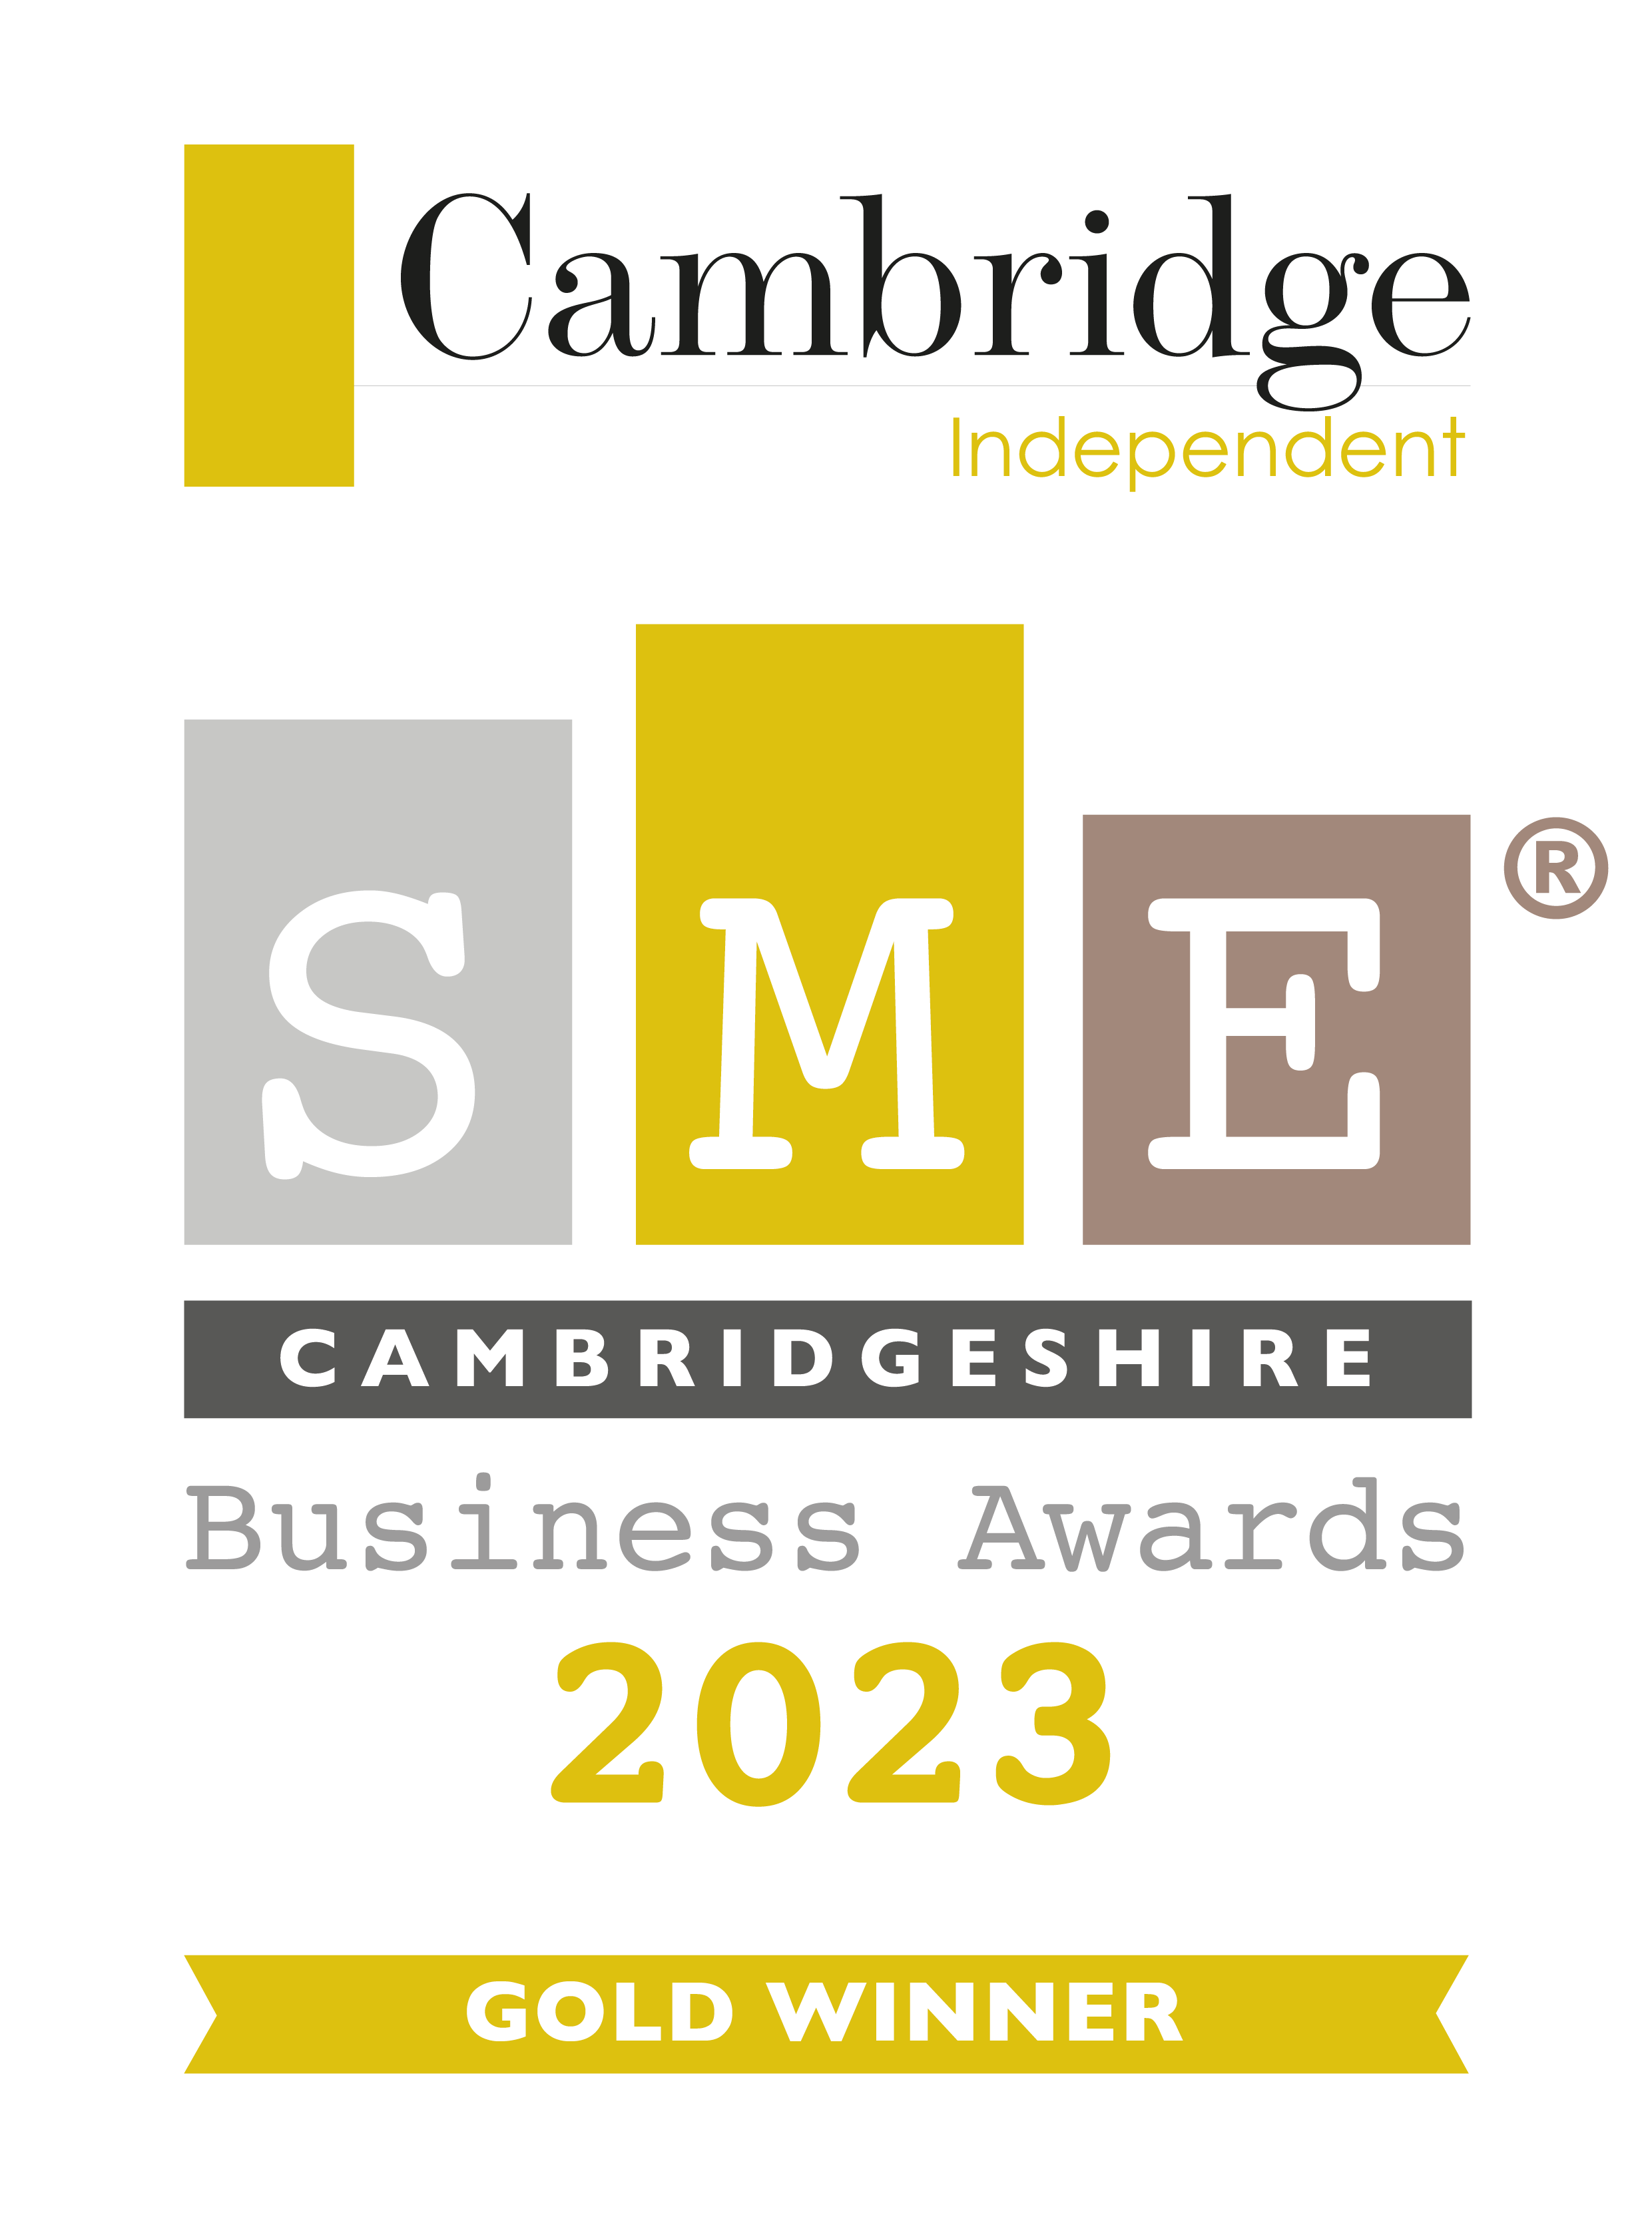 Cambridge Independent Gold Award logo